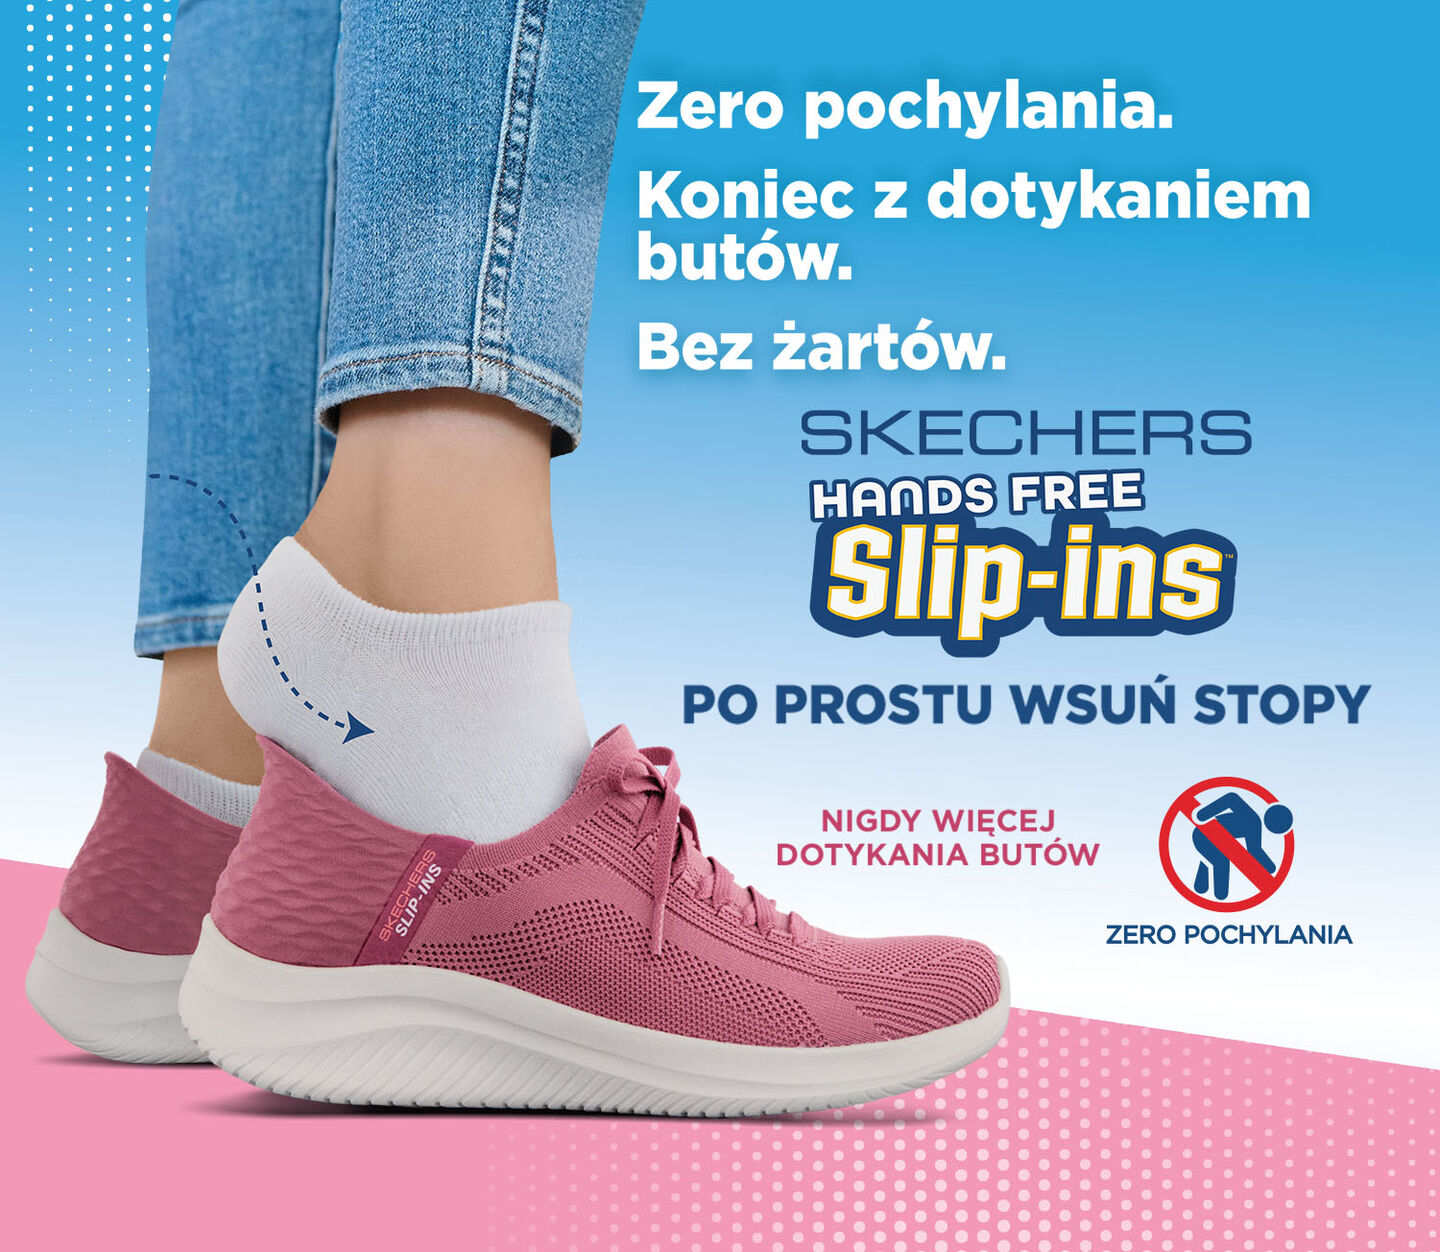 Skechers Hands Free Slip-ins